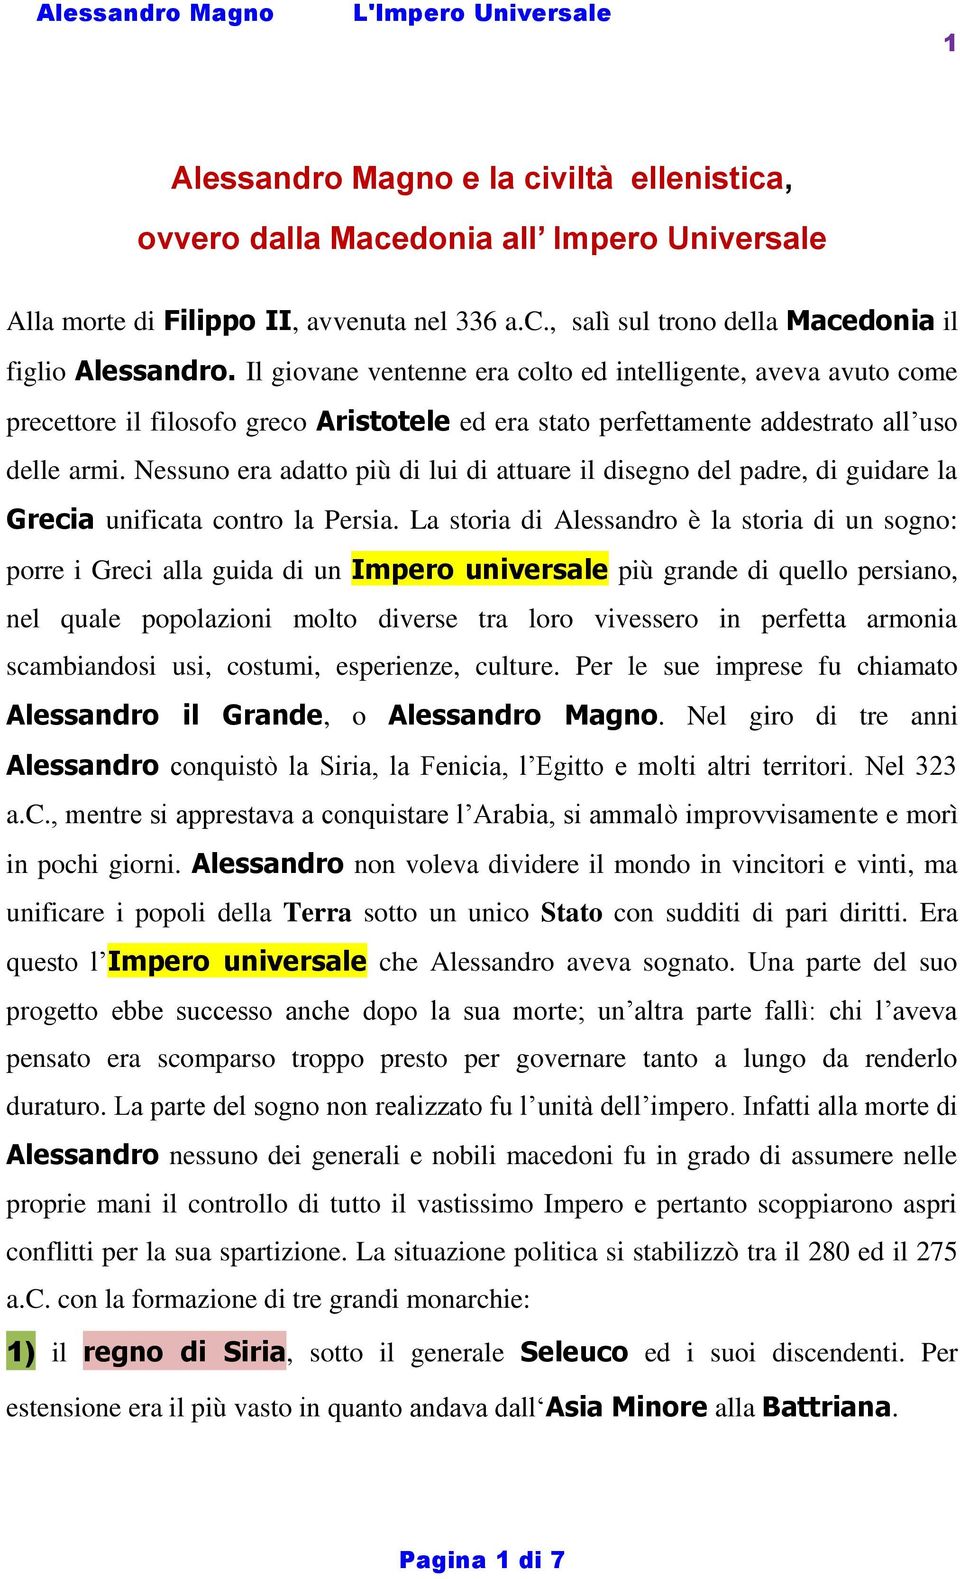 Alessandro Magno E La Civilta Ellenistica Ovvero Dalla Macedonia All Impero Universale Pdf Download Gratuito